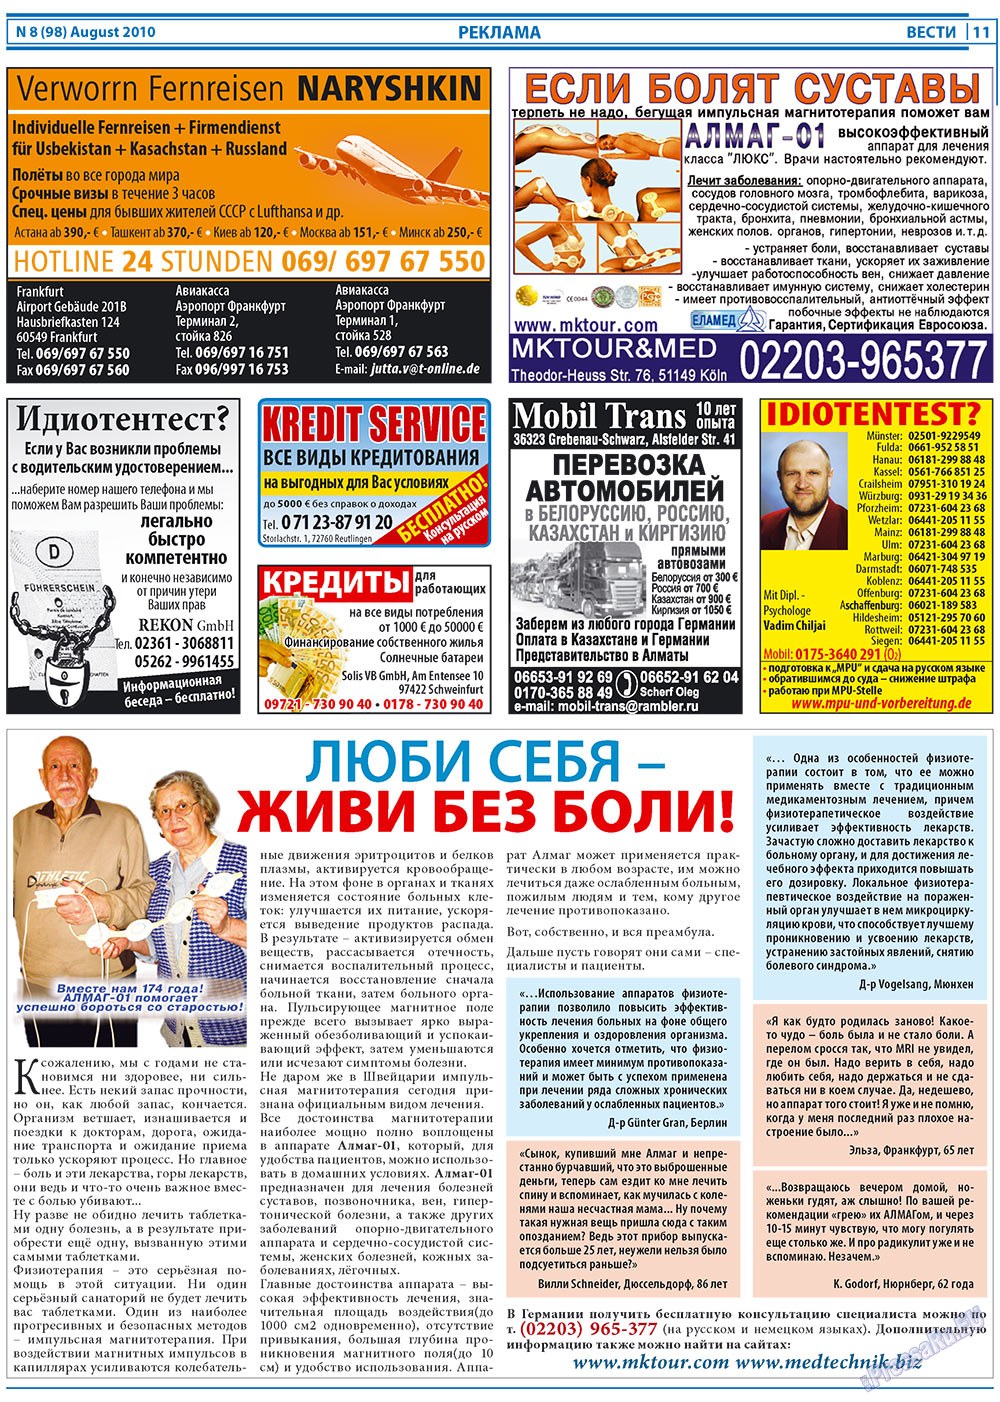 Вести, газета. 2010 №8 стр.11